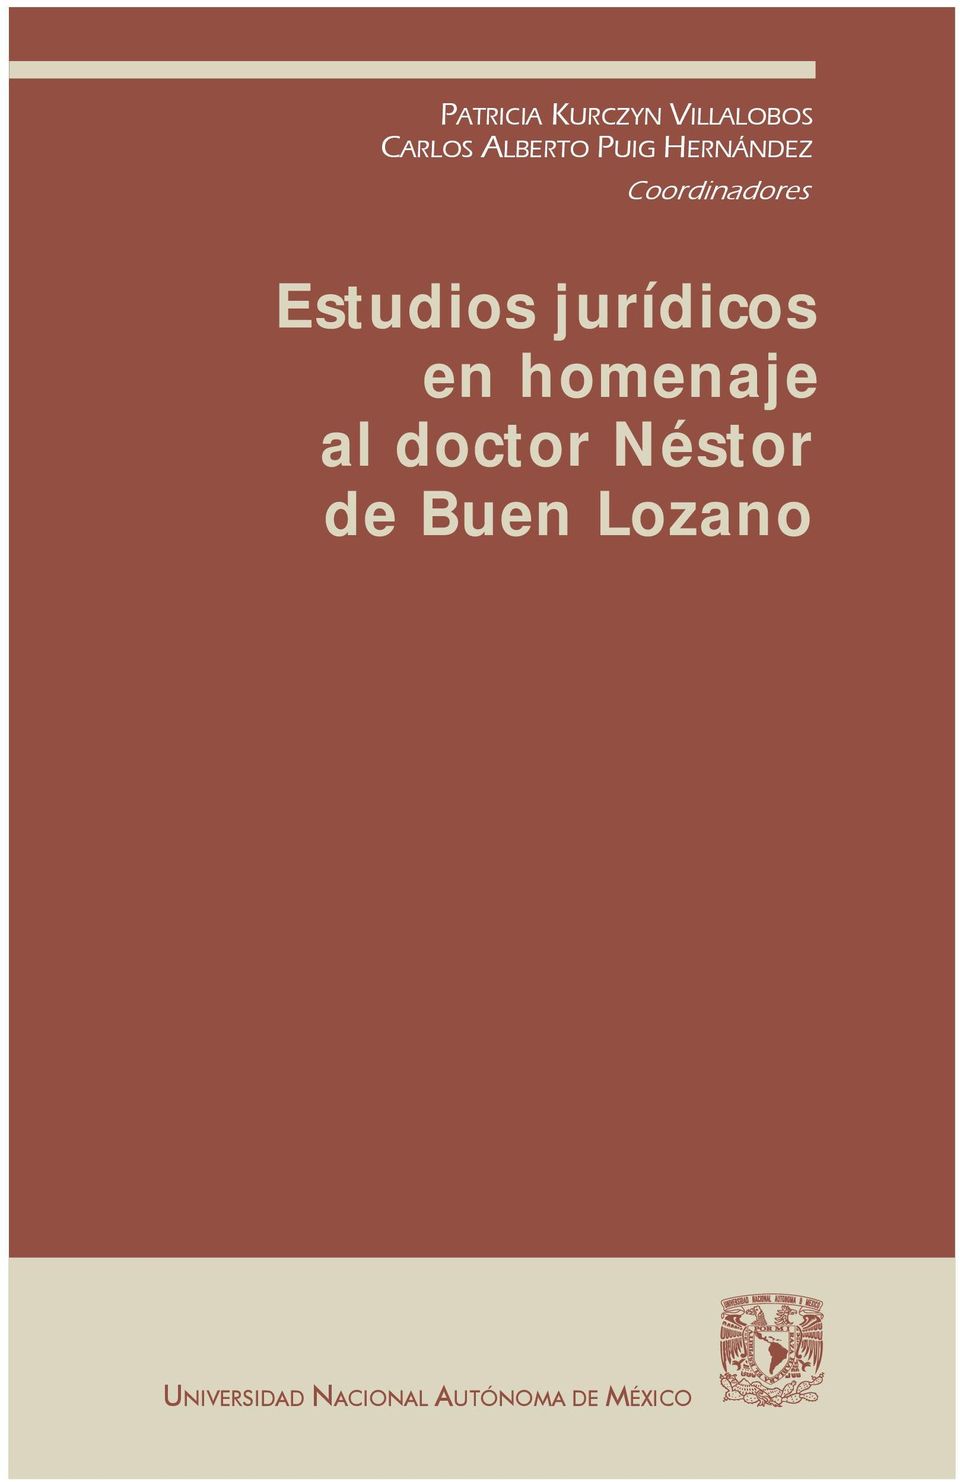 jurídicos en homenaje al doctor Néstor de